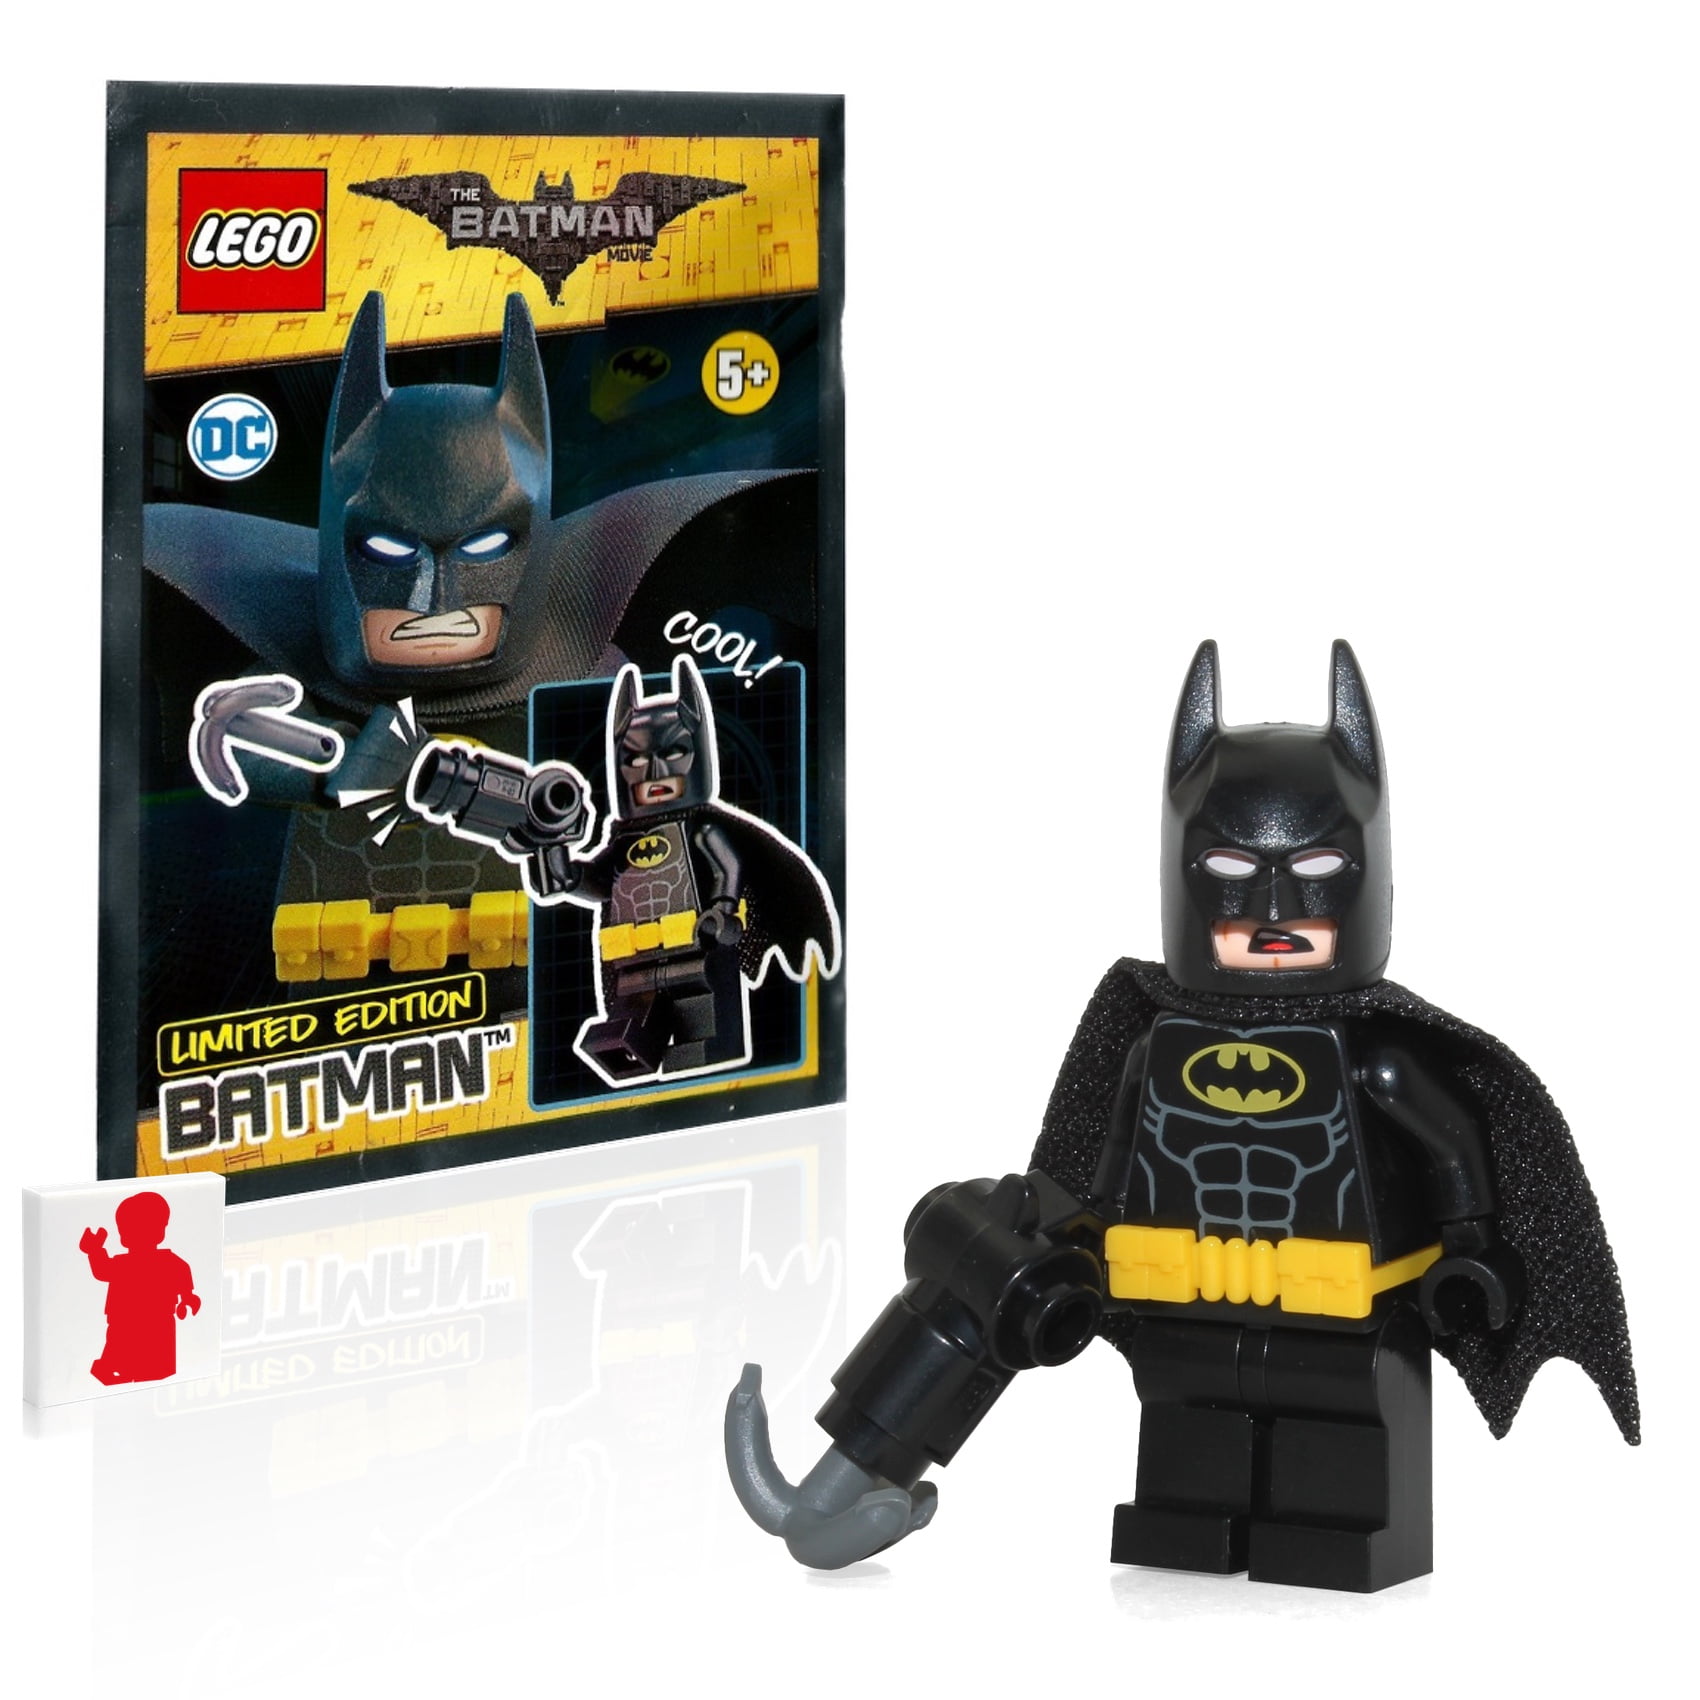 LEGO COMPATIBLE THE JOKER MINIFIGURE BATMAN MOVIE ACTION FIGURE 